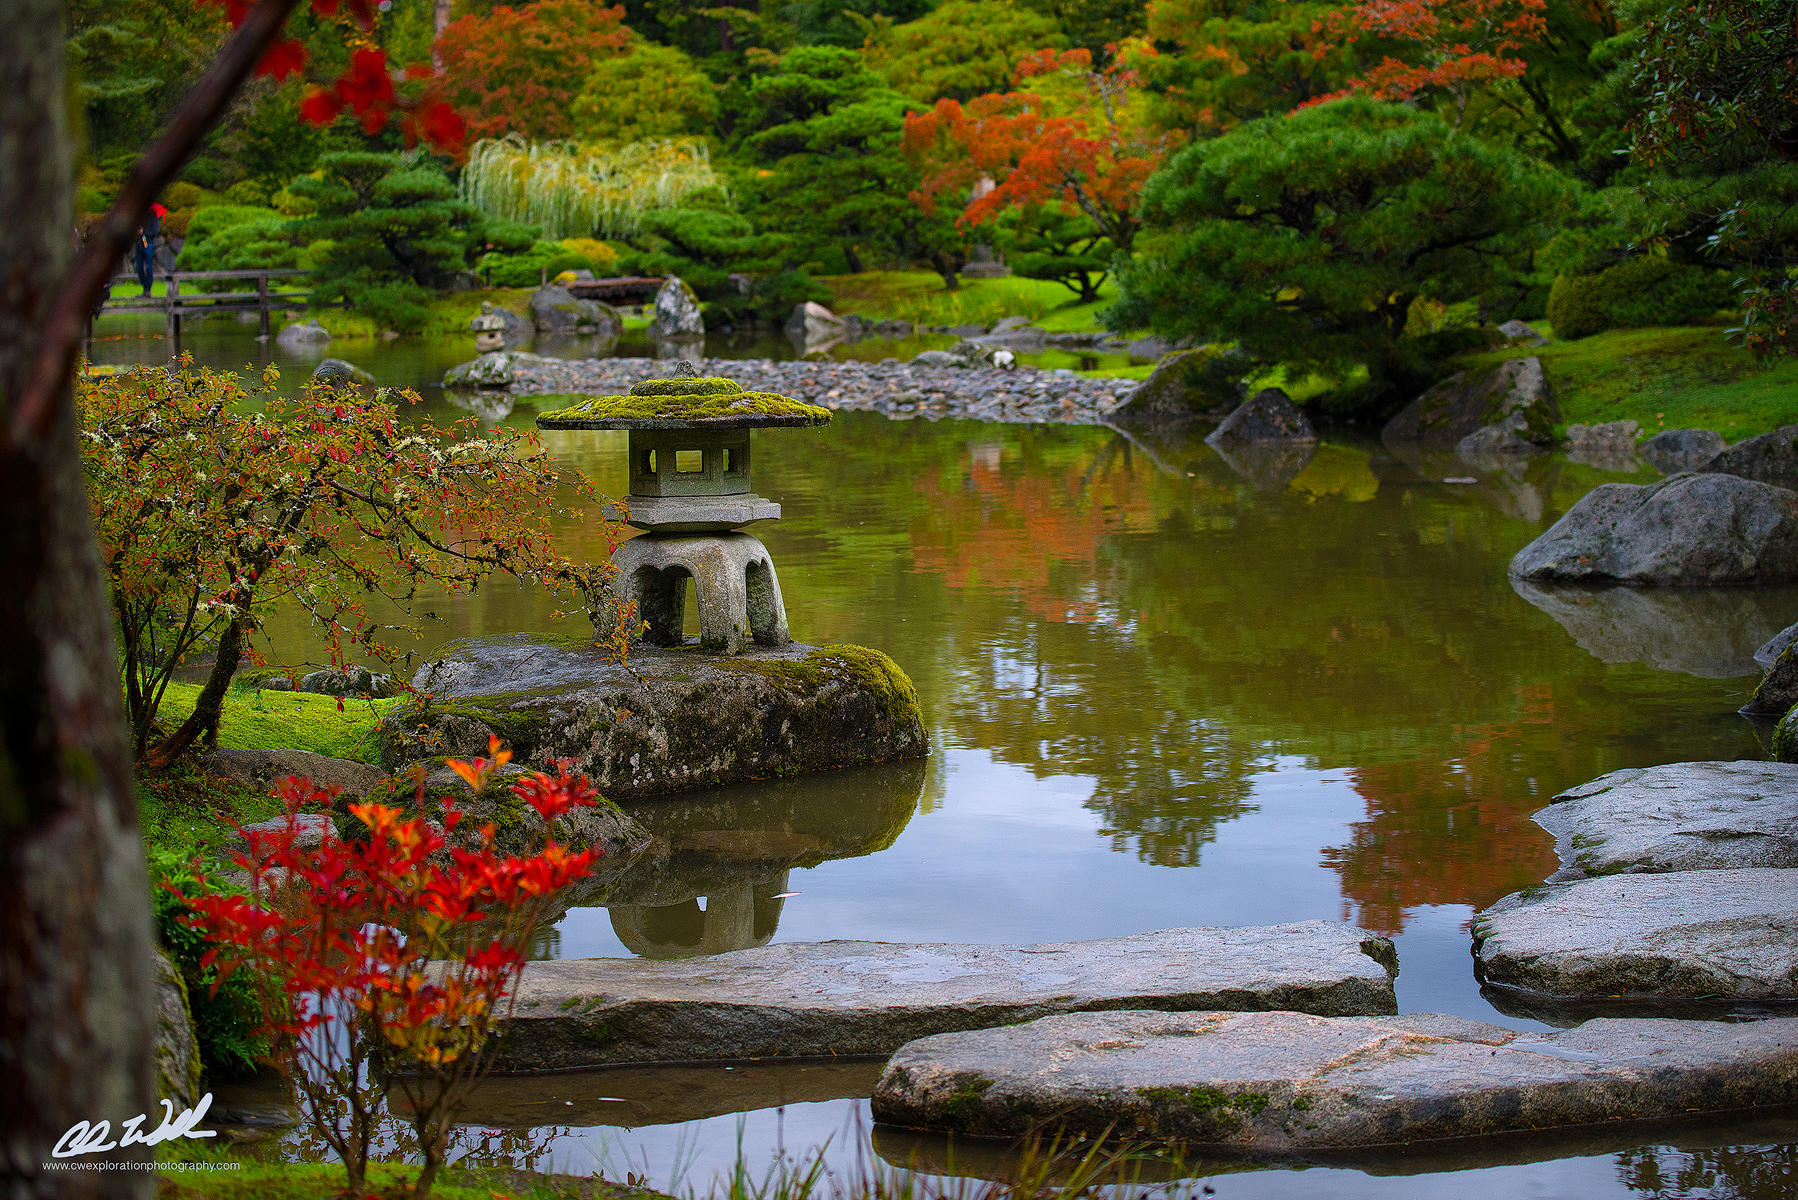 Забронировать столик в японском саду. Парк Клингендаел-японский сад. Японский сад Kubota Сиэтл, Вашингтон. Холмистый японский сад. Японский сад Хейанский период.